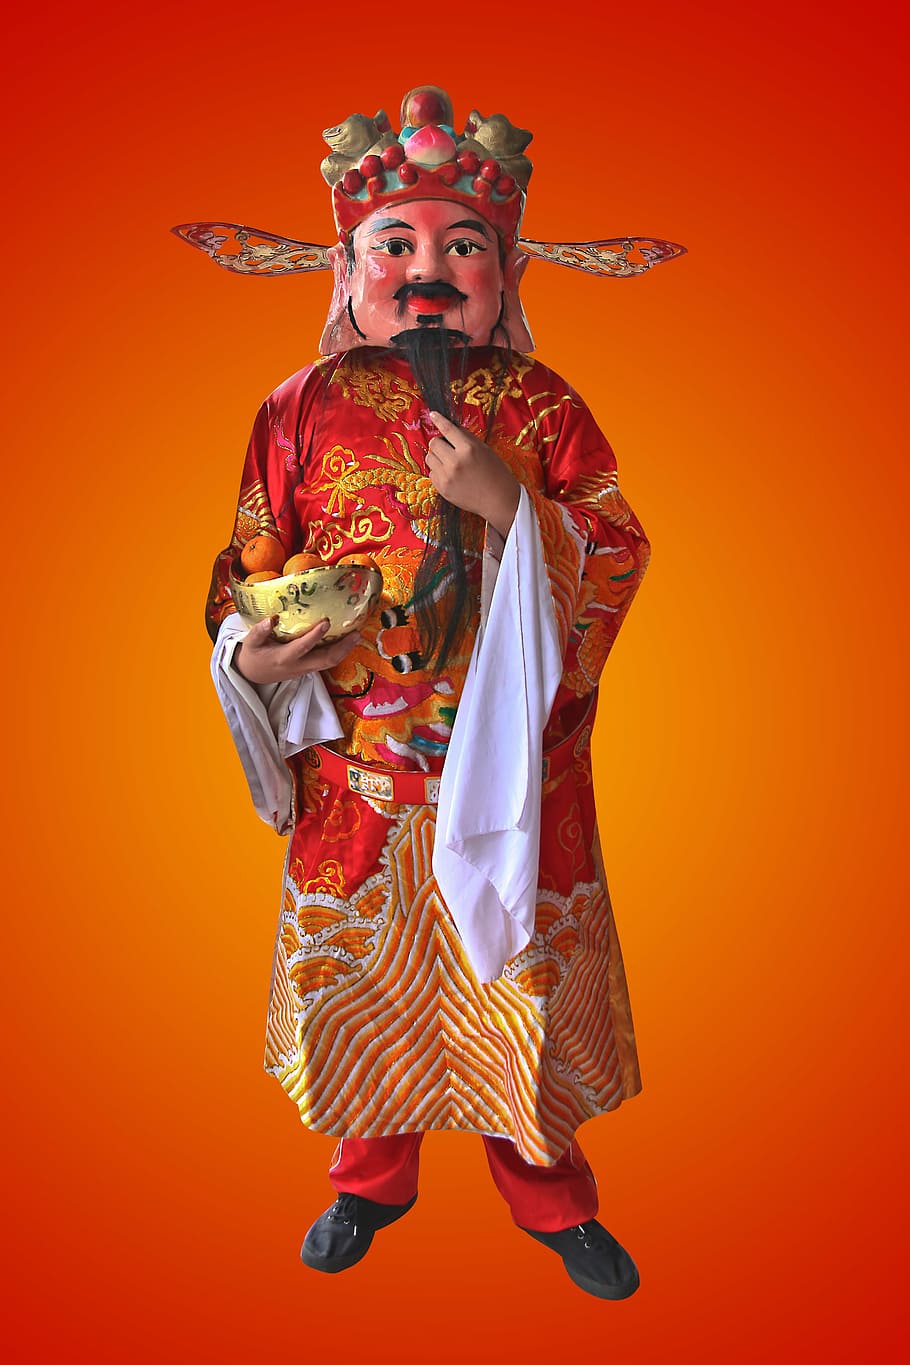 dios de la prosperidad, año nuevo chino, oro, prosperidad, tradicional, riqueza, celebración, festival, bendición, chino